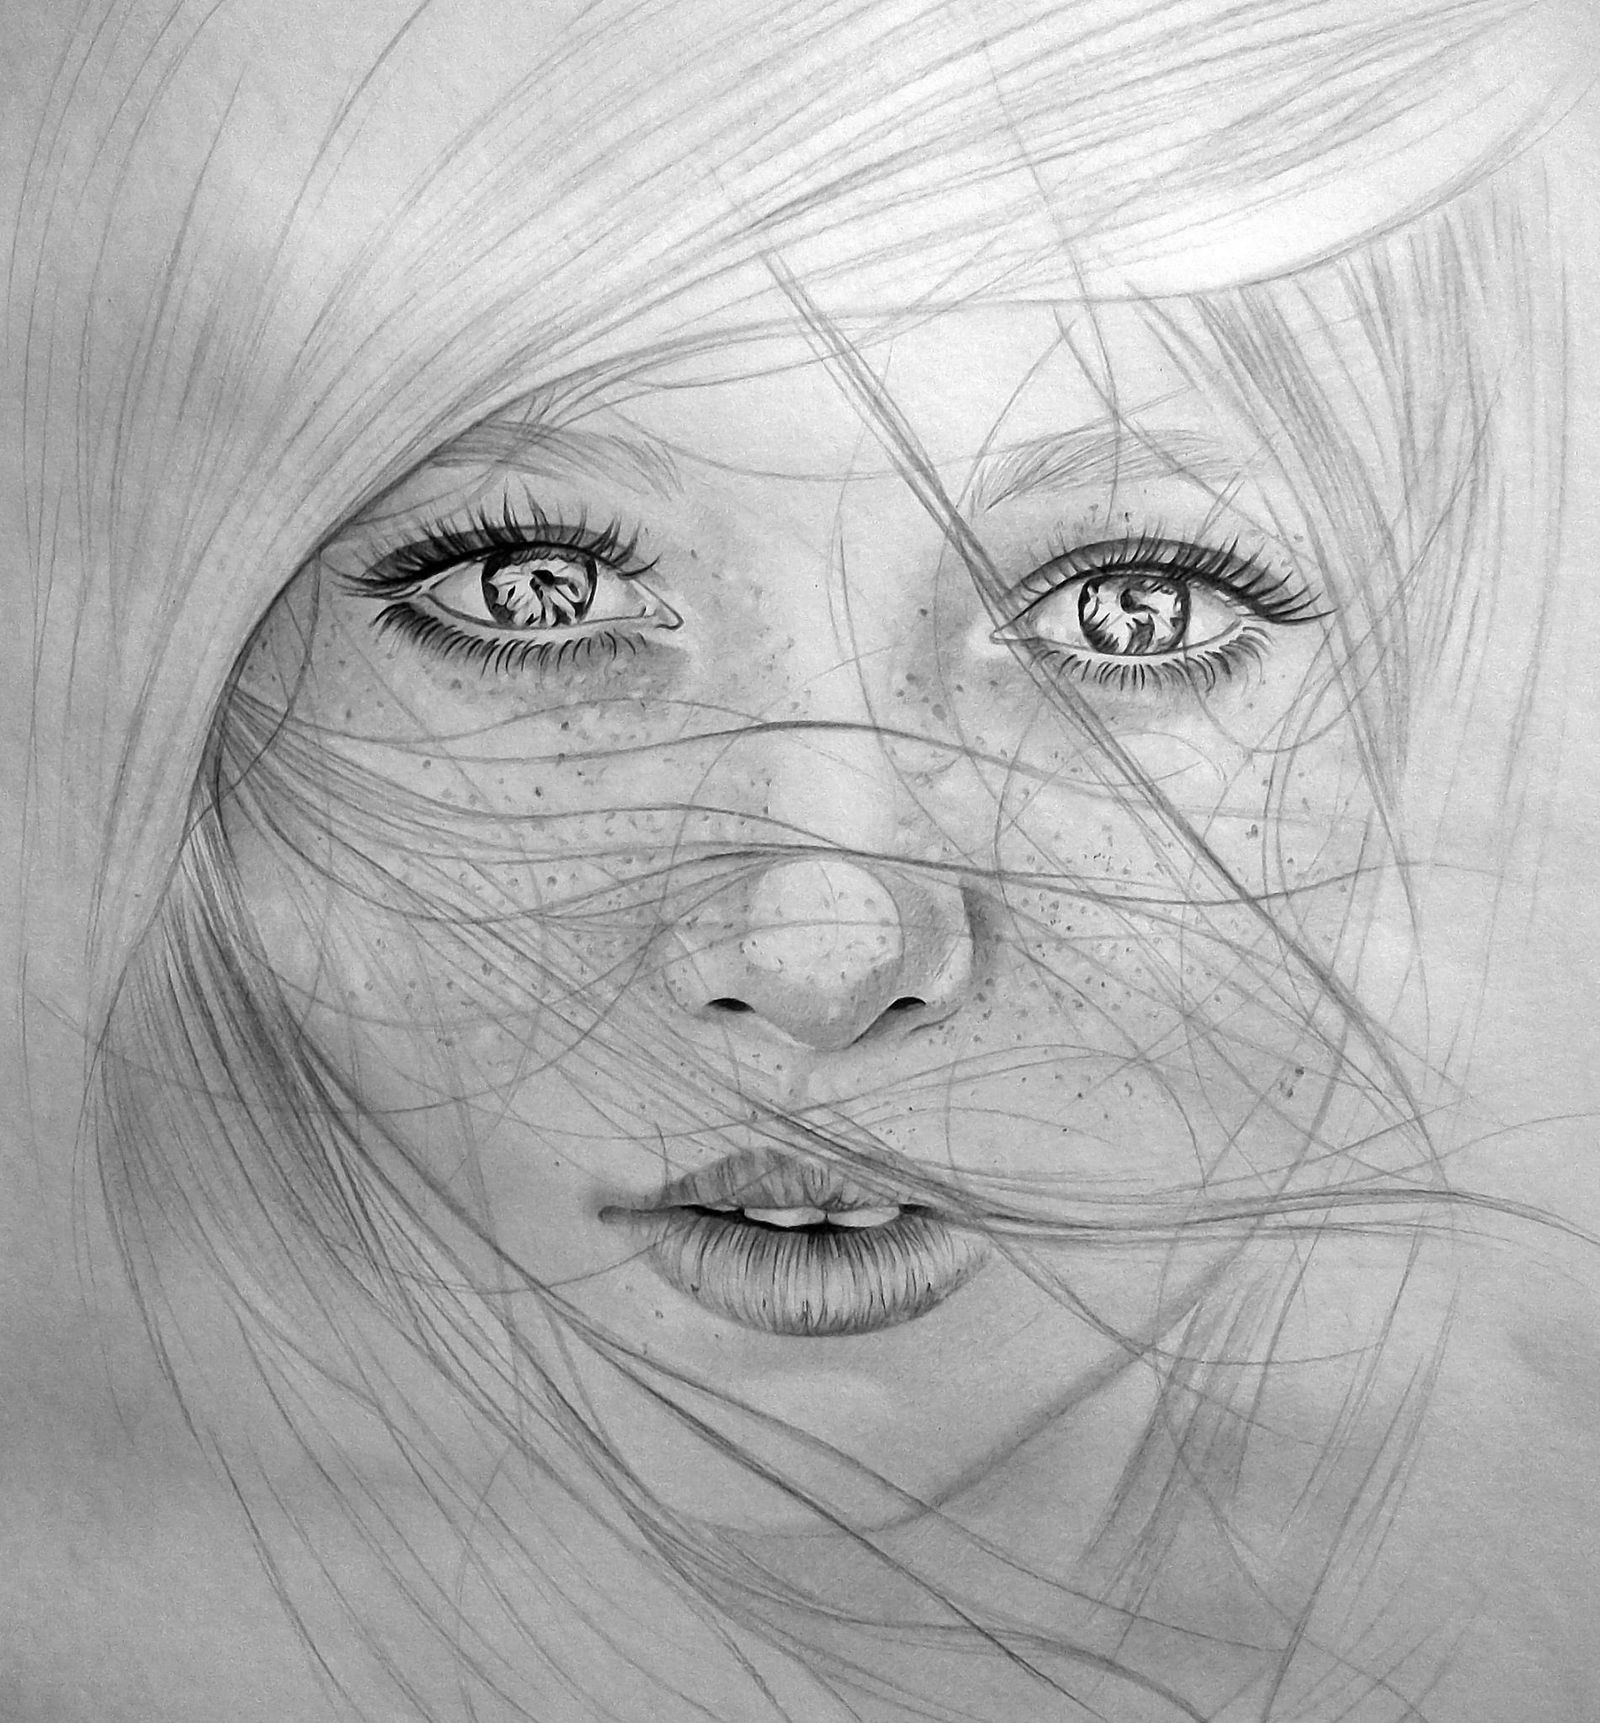 Crno-bijeli crtež djevojke